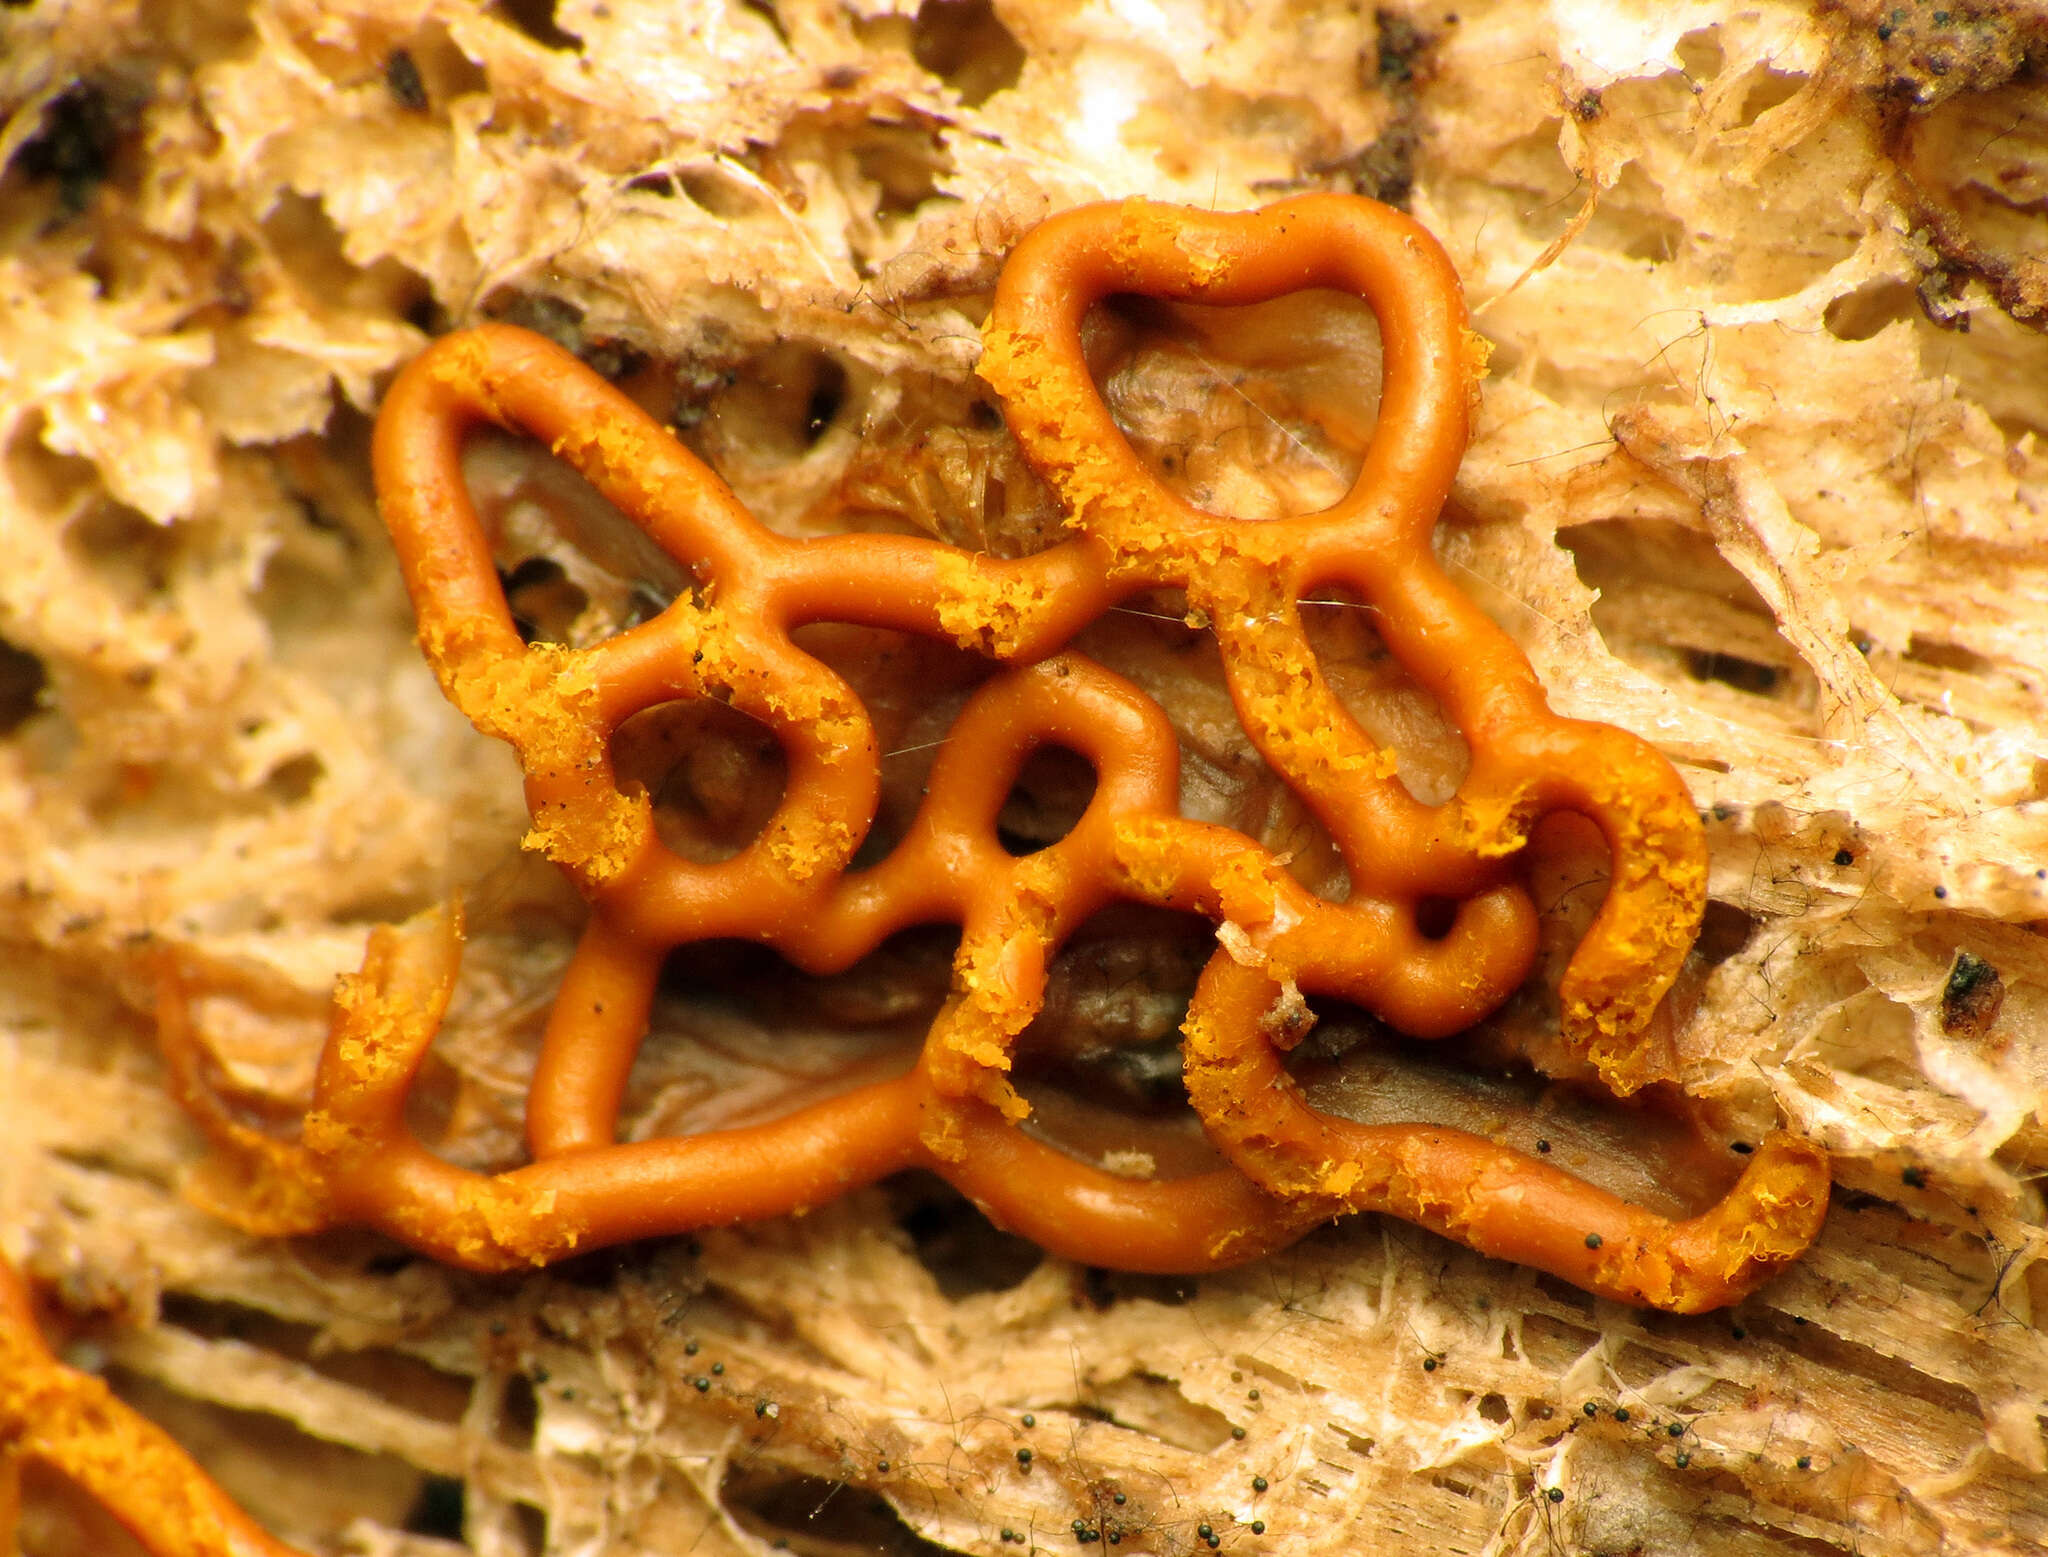 Image of Pretzel slime mold